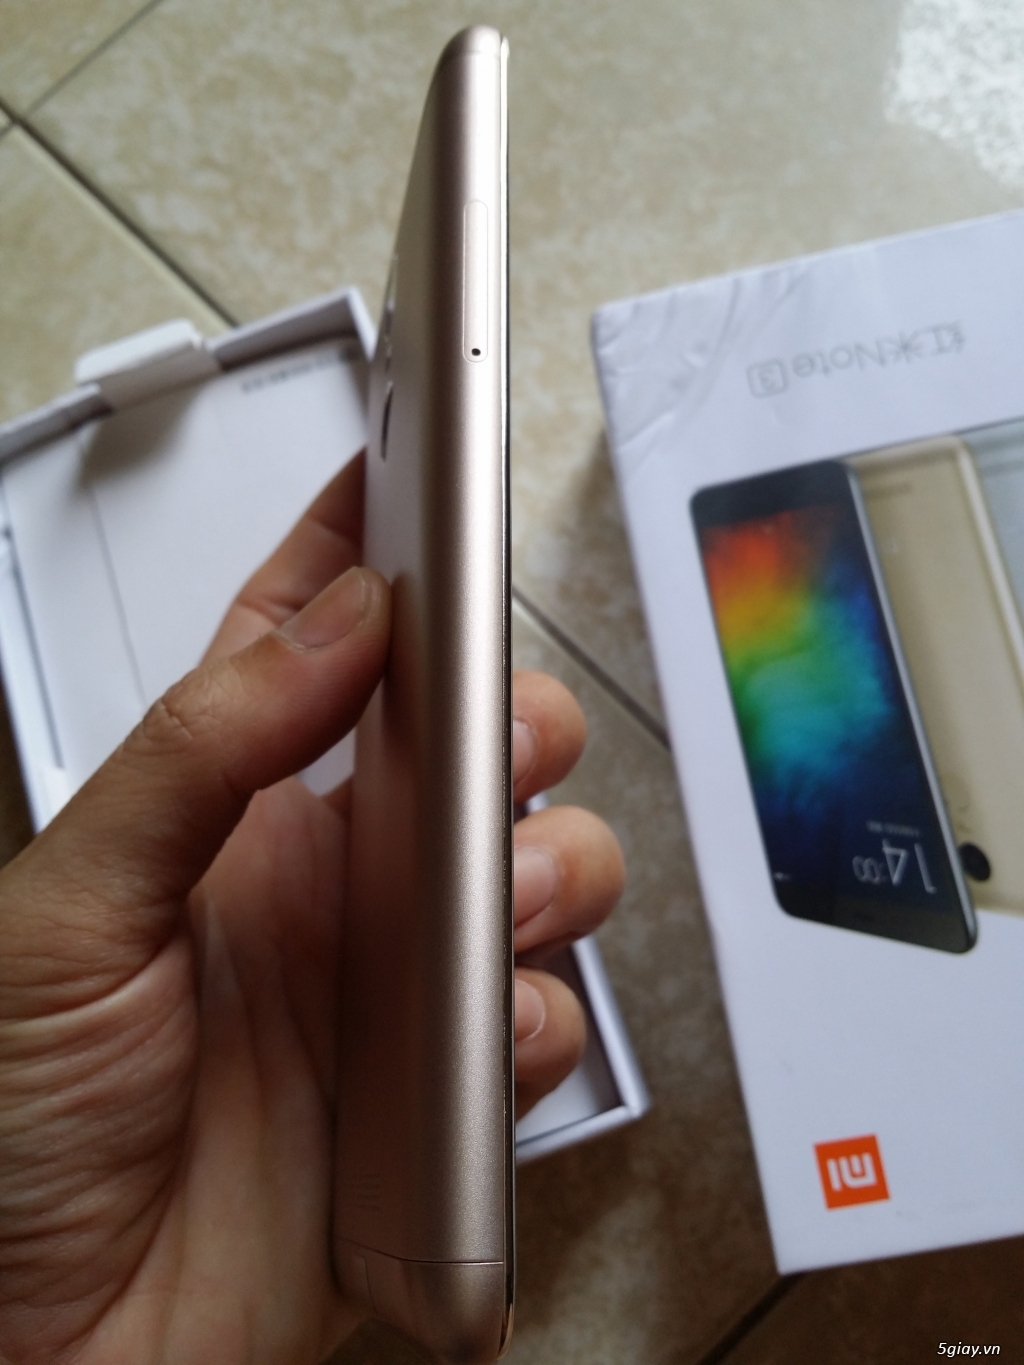 Xiaomi Redmi Note 3 Gold Ram 3G/32G like new 99,9% bh 12 tháng - 3